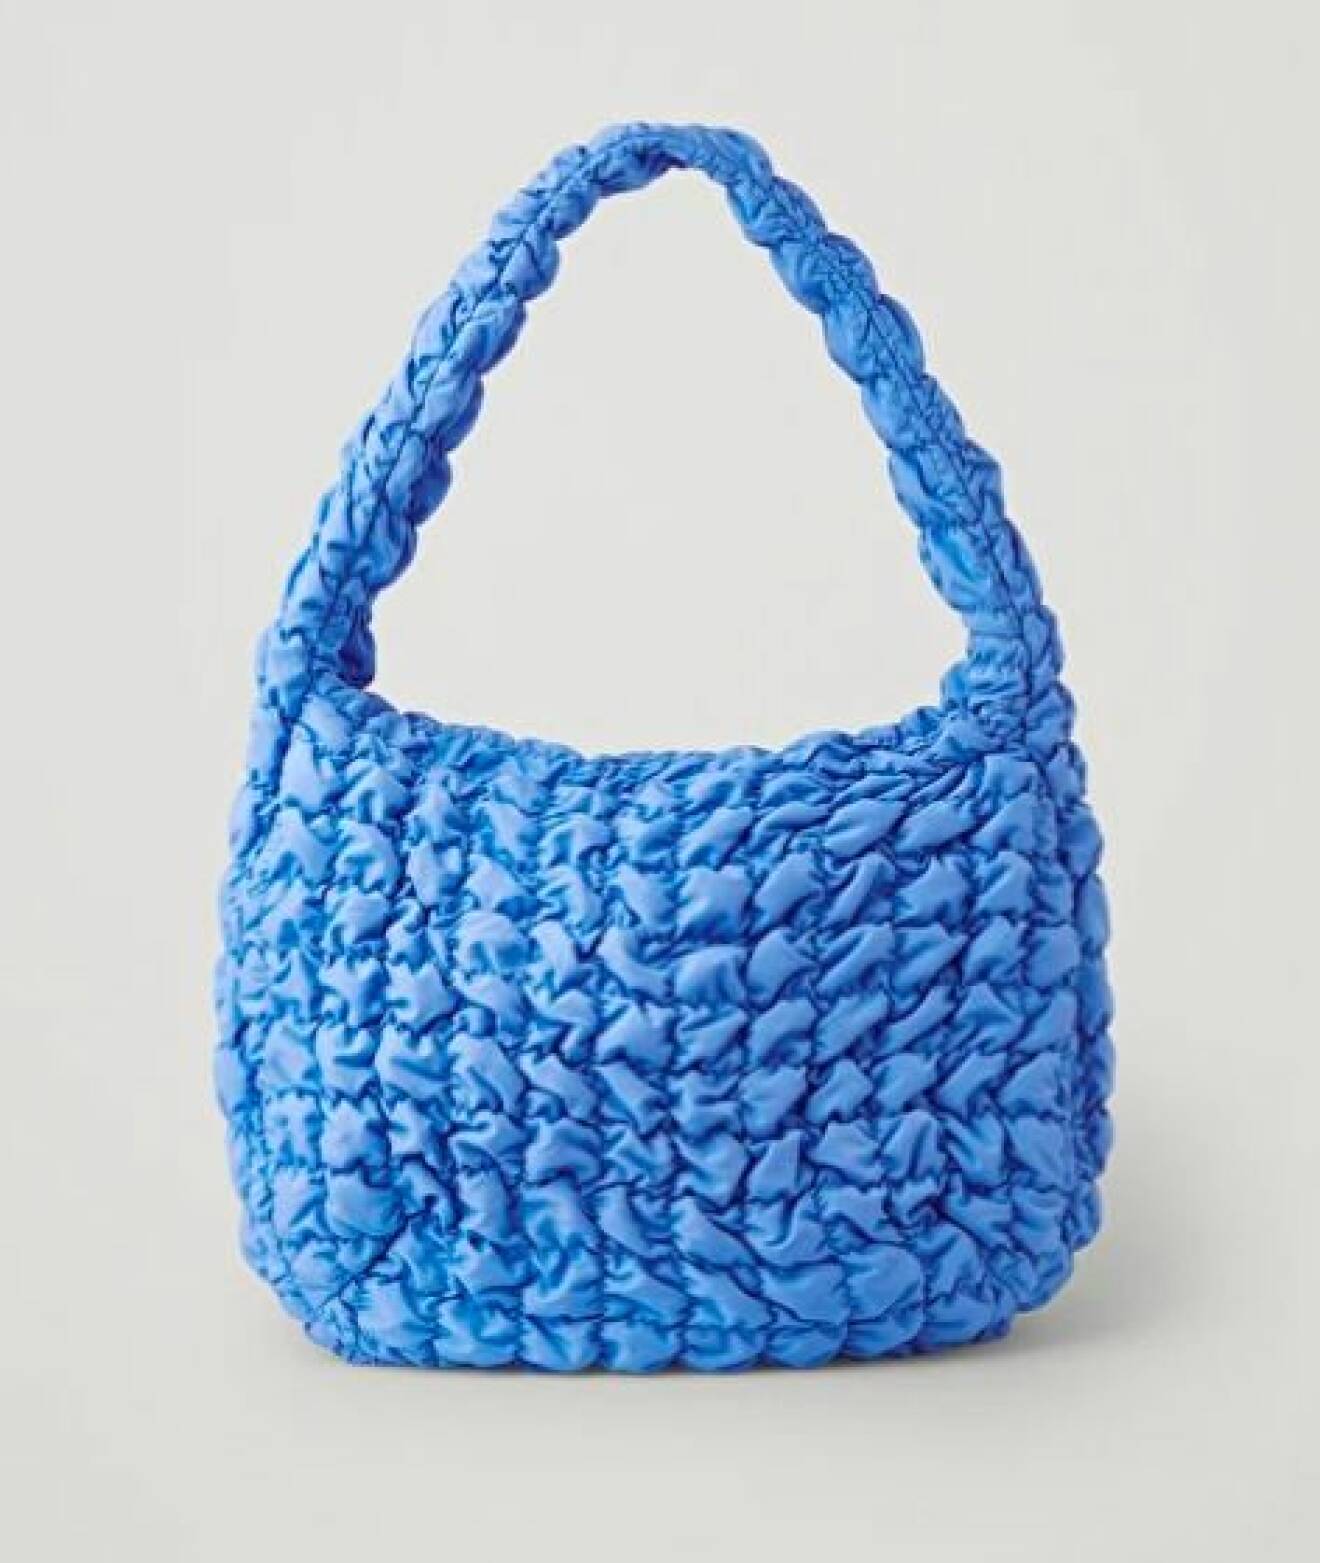 Klarblå handväska i quiltat, bubbligt tyg. Oversizad väska från Cos.